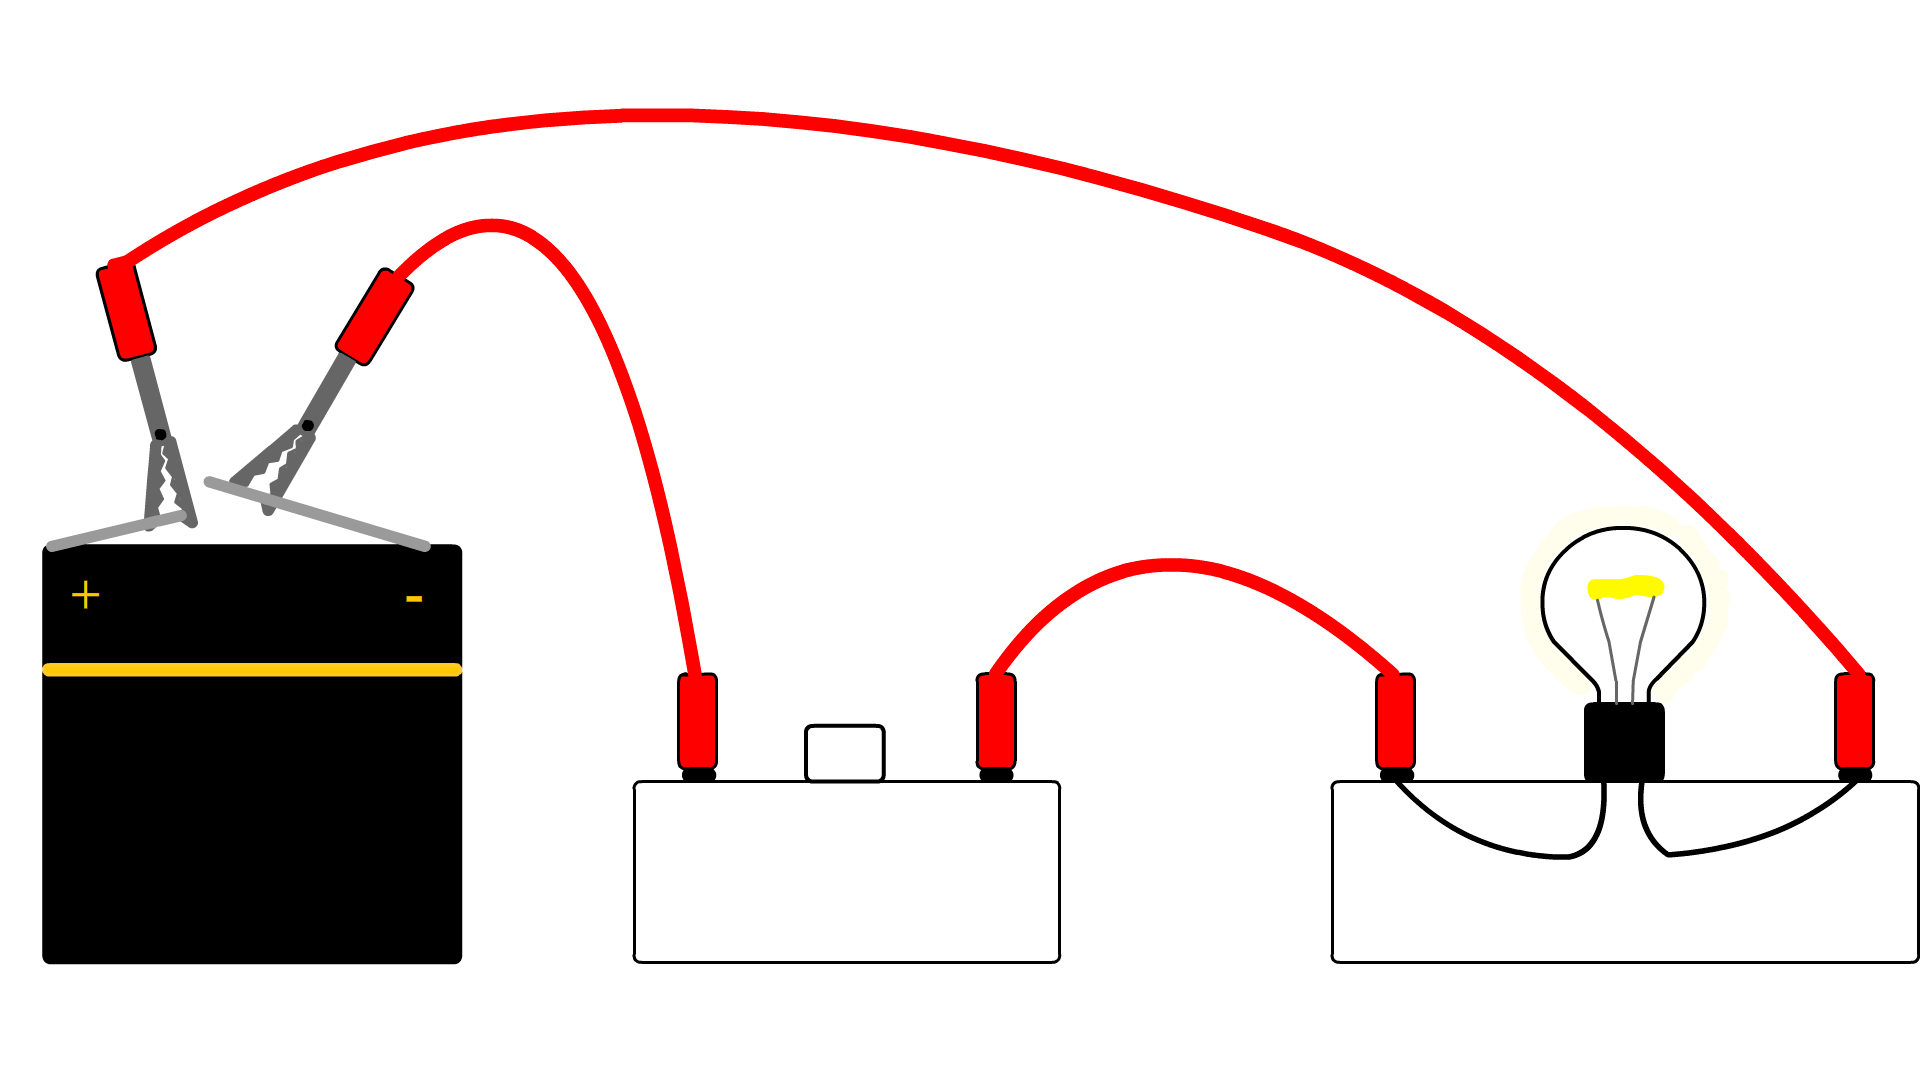 30 батарея рисунок. Parallel circuit with Bulb and Switch. Electric scheme physics. Плазма рисунок физика. Клеммы на рисунке физика.